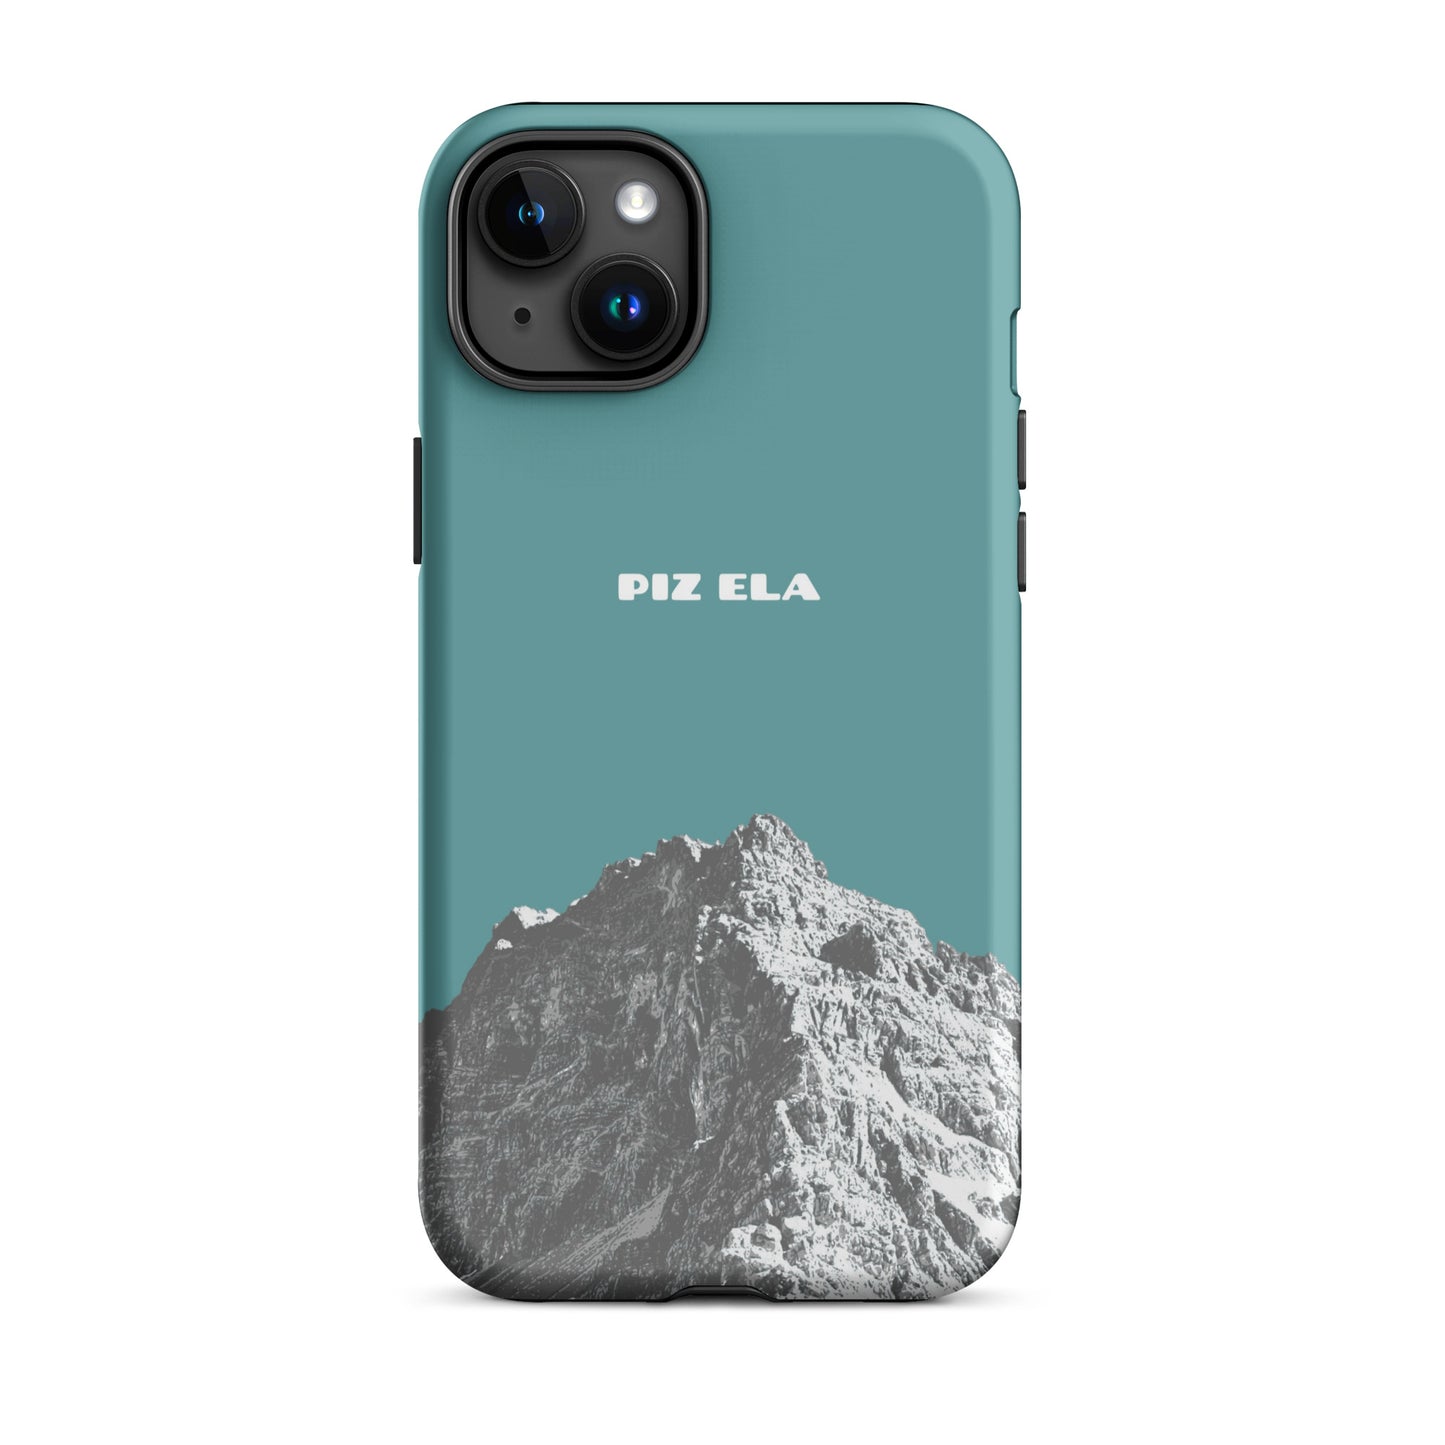 iPhone Case - Piz Ela - Kadettenblau